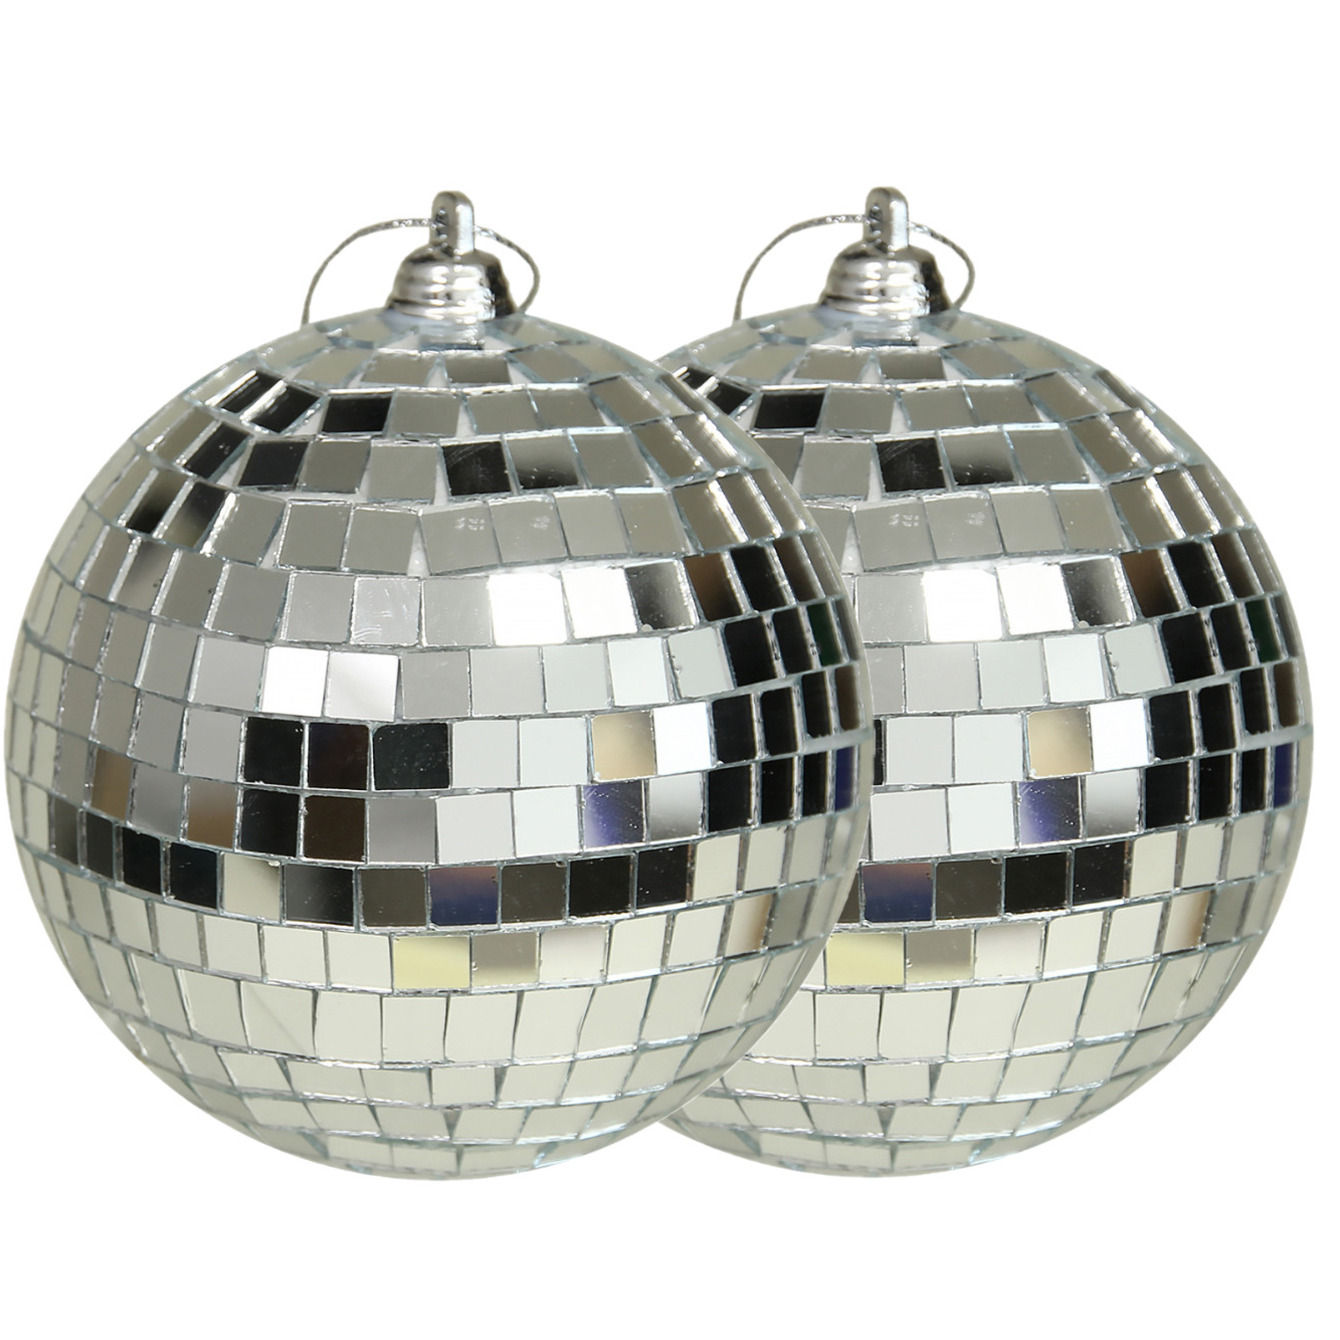 Grote discobal kerstballen 2x stuks zilver 10 cm kunststof